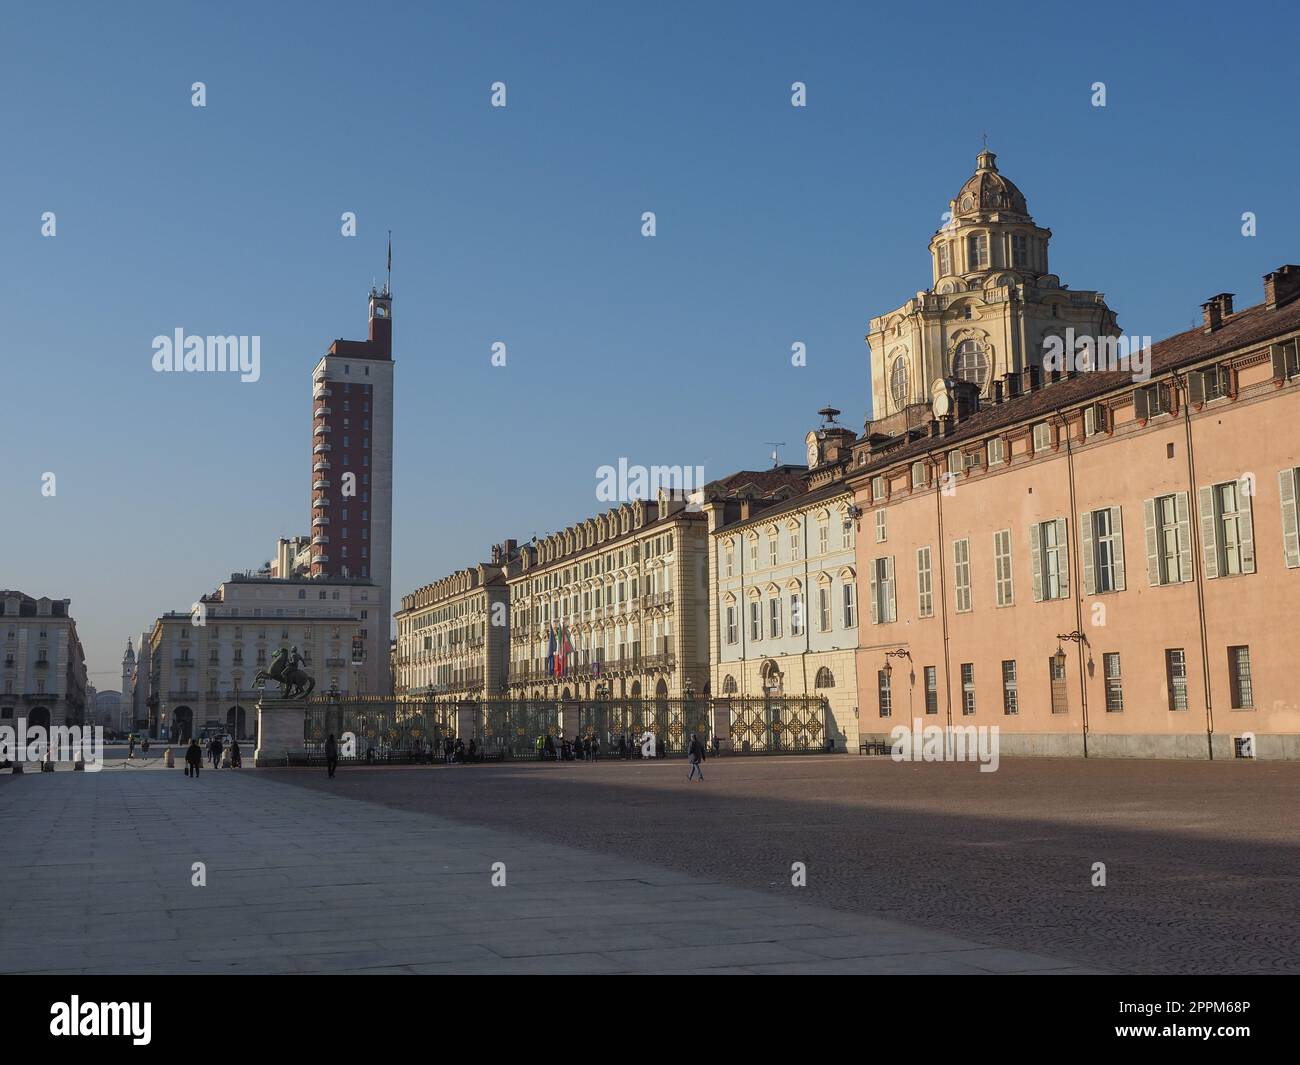 Piazza Castello square in Turin Stock Photo - Alamy